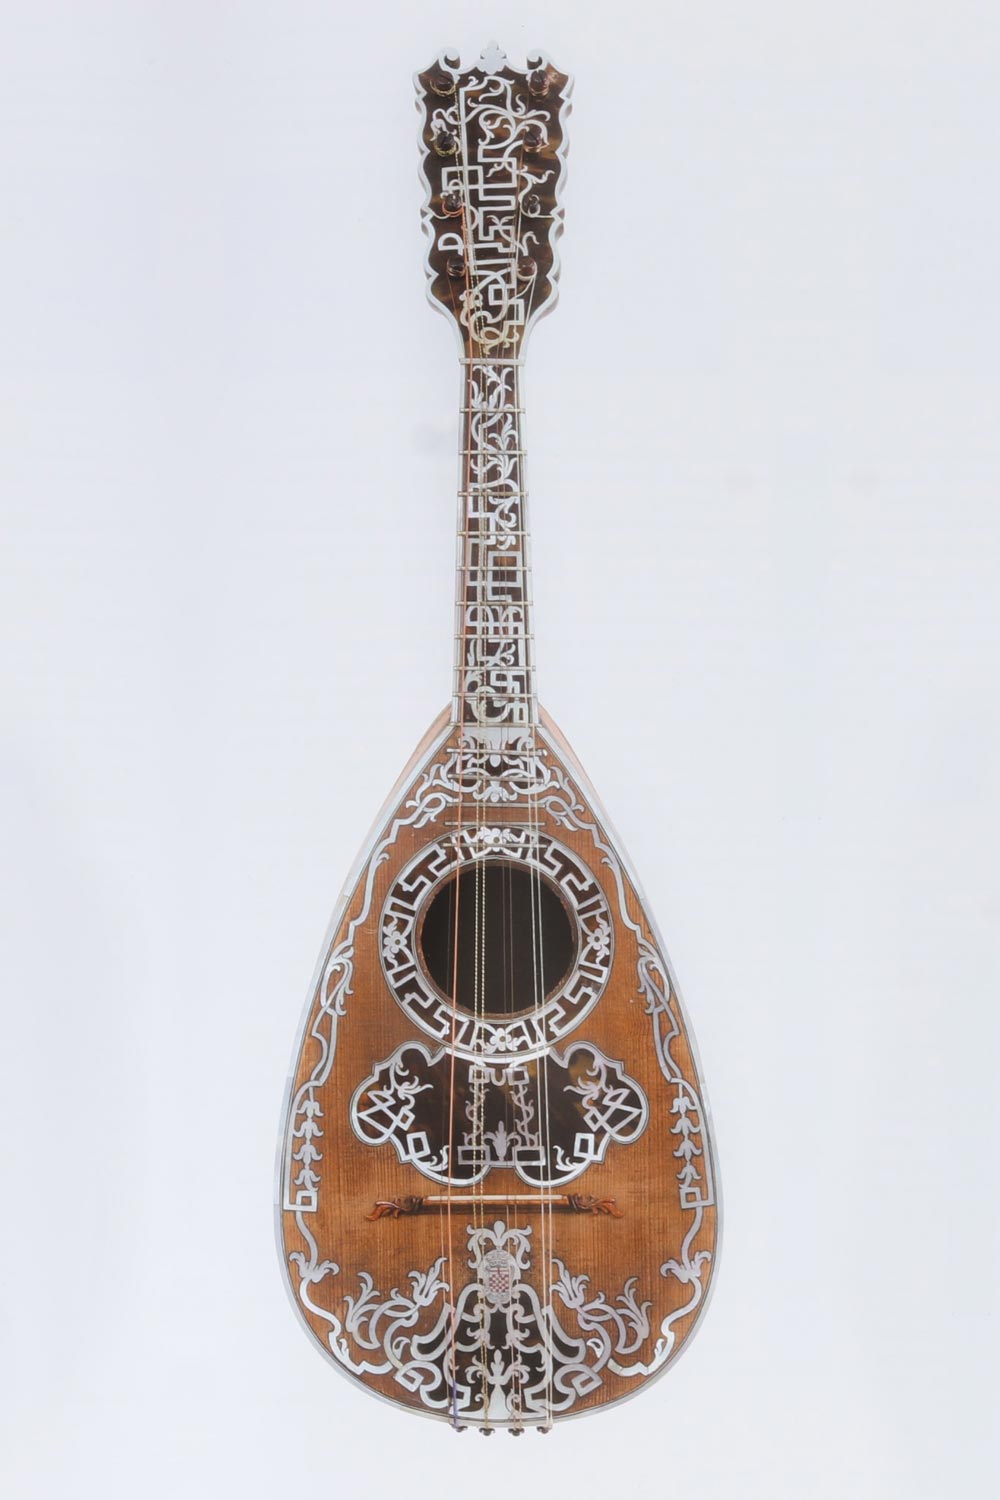 Antonio Vinaccia, mandoline de la princesse della Cisterna, collection particulière, 1775, chevalet